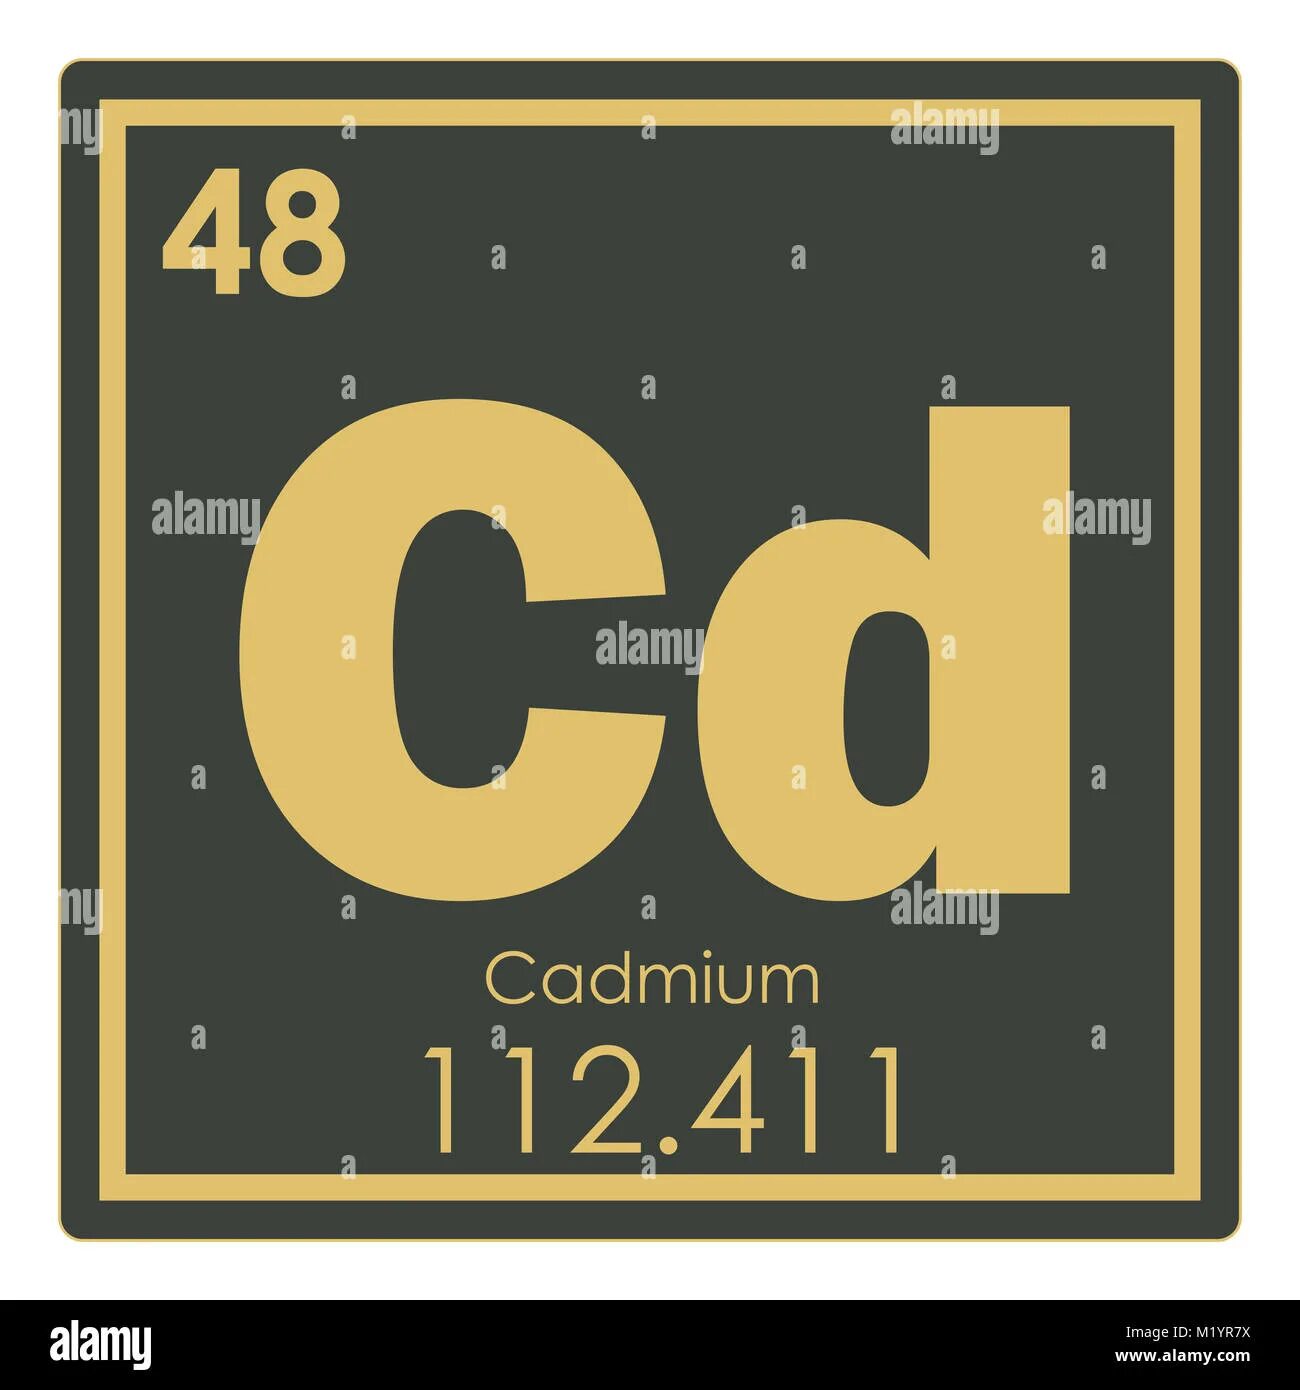 CD химический элемент. Кадмий химический элемент. Кадмий химический элемент в таблице. CD кадмий.